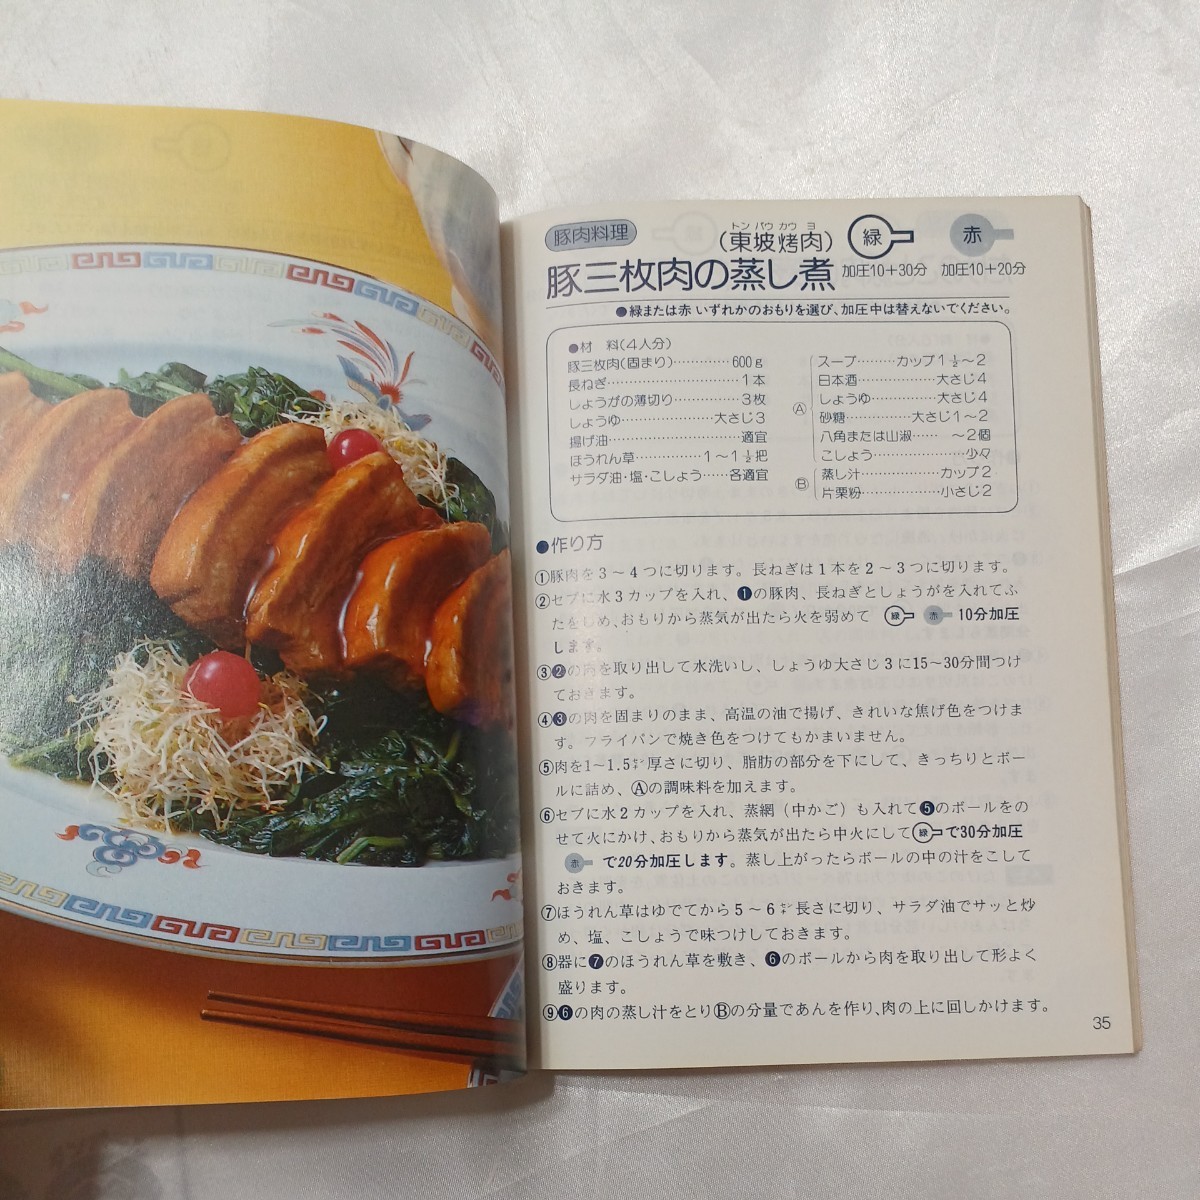 zaa-469♪セブお料理ブック　SEBACE SEB EXCLUSIVITY セブエース鍋(セブウルトラクッカー) 　セブジャパン(発行)